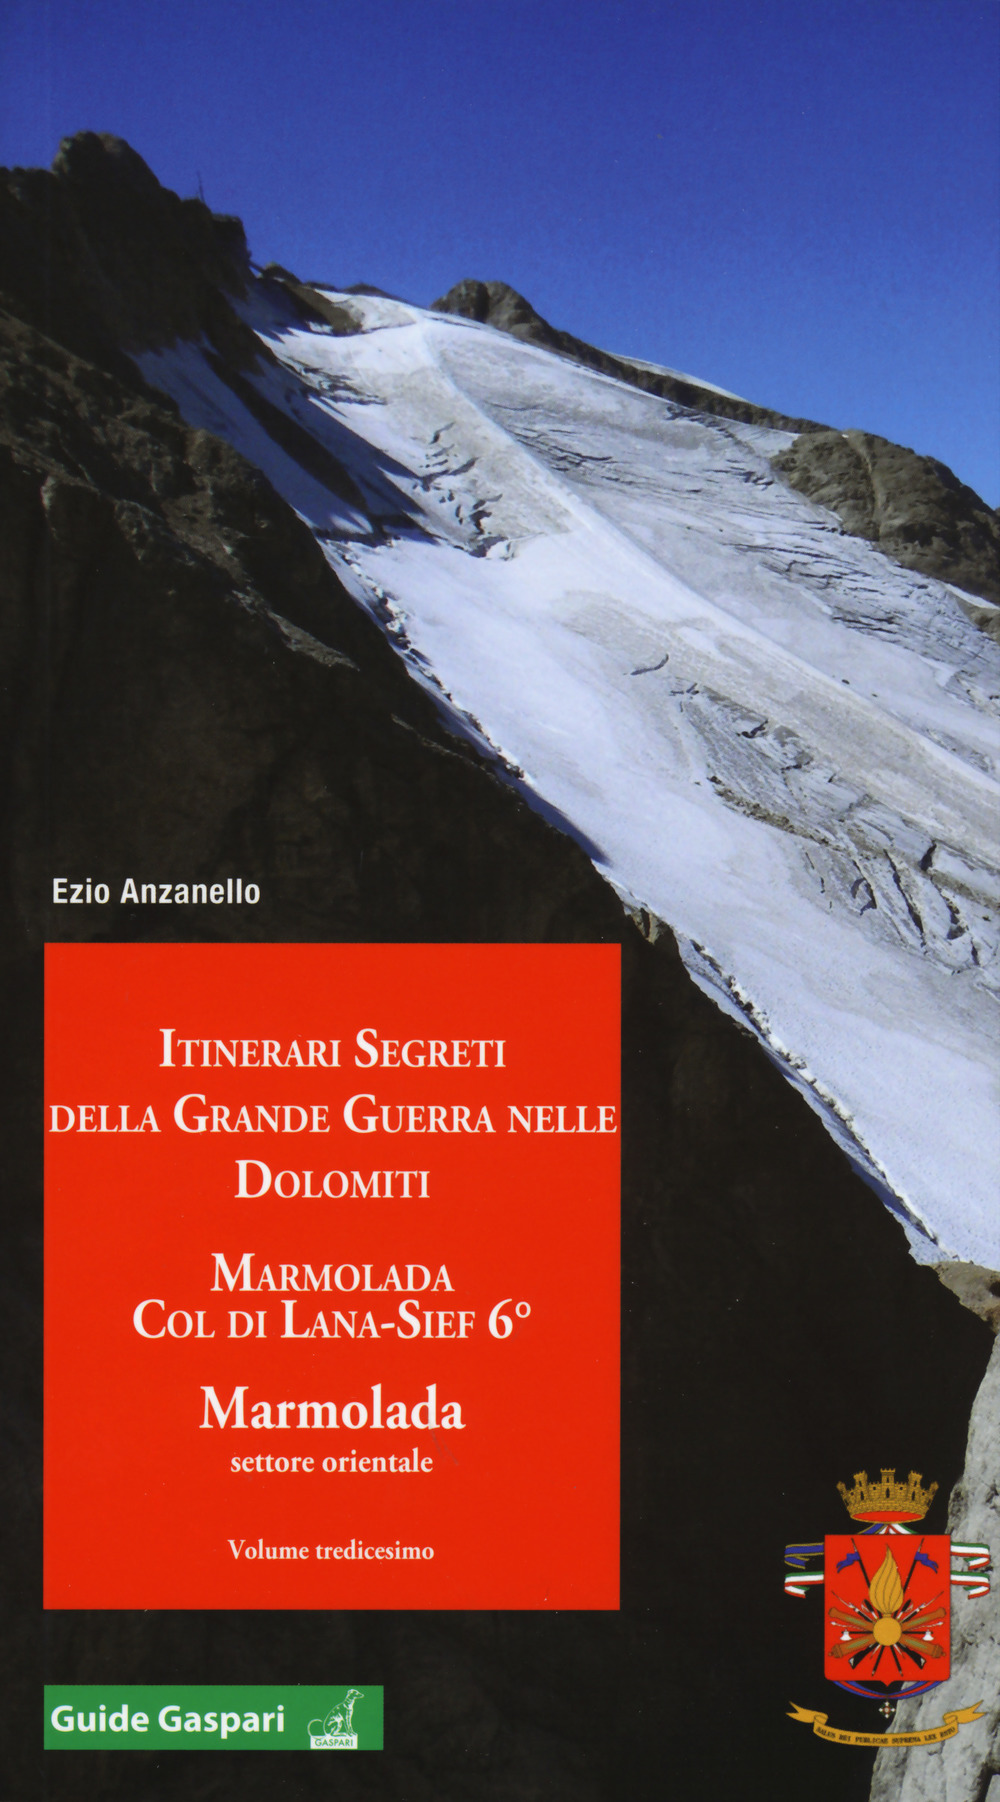 Itinerari segreti della grande guerra nelle Dolomiti. Vol. 13: Marmolada. Col di Lana, Sief 6°. Marmolada settore orientale